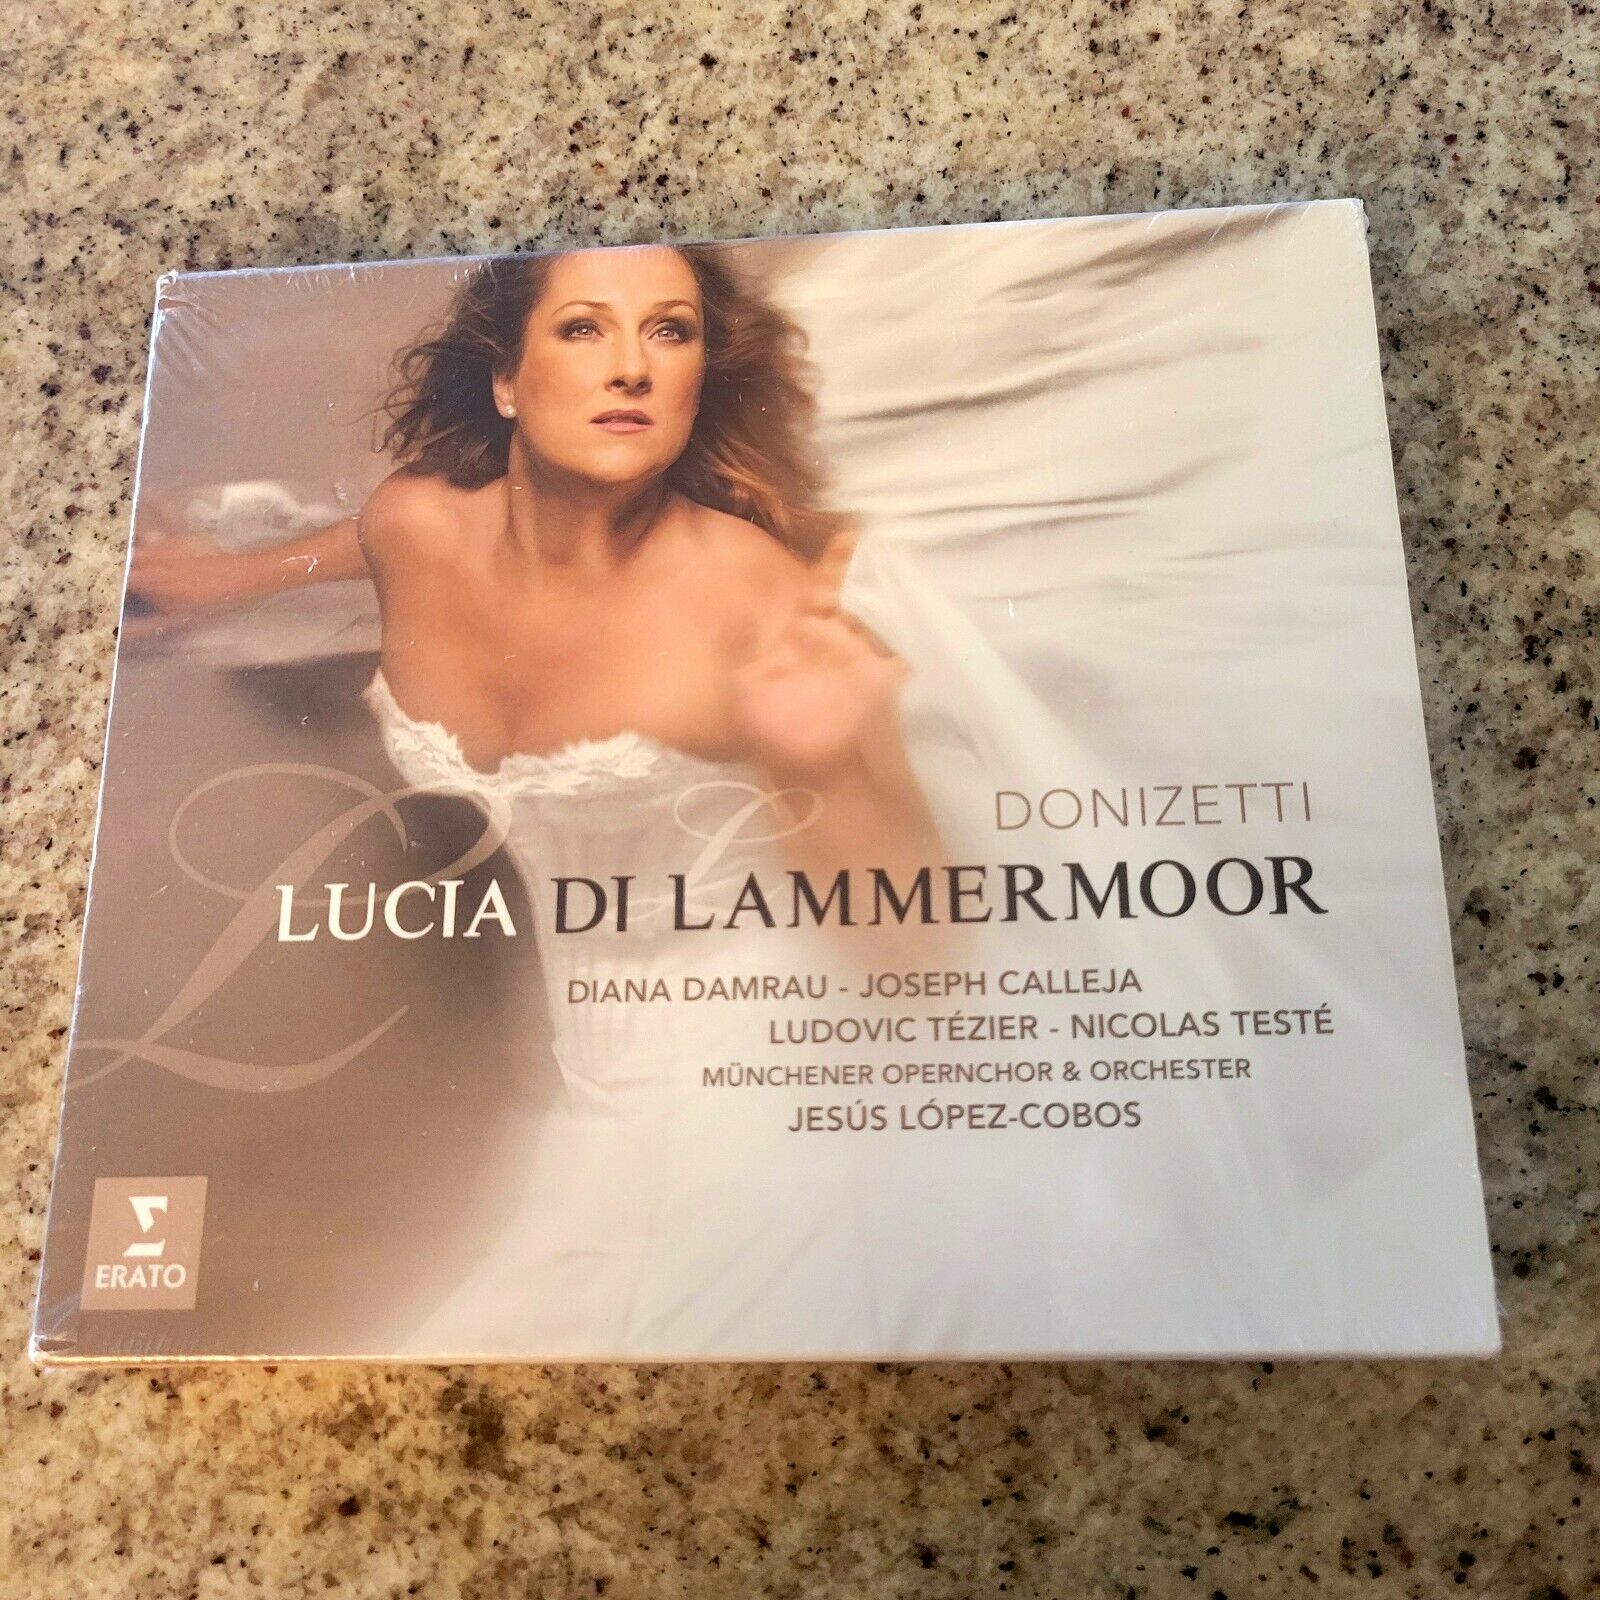 Gaetano Donizetti Donizetti Lucia Di Lammermoor Music CD Album Brand New Rare